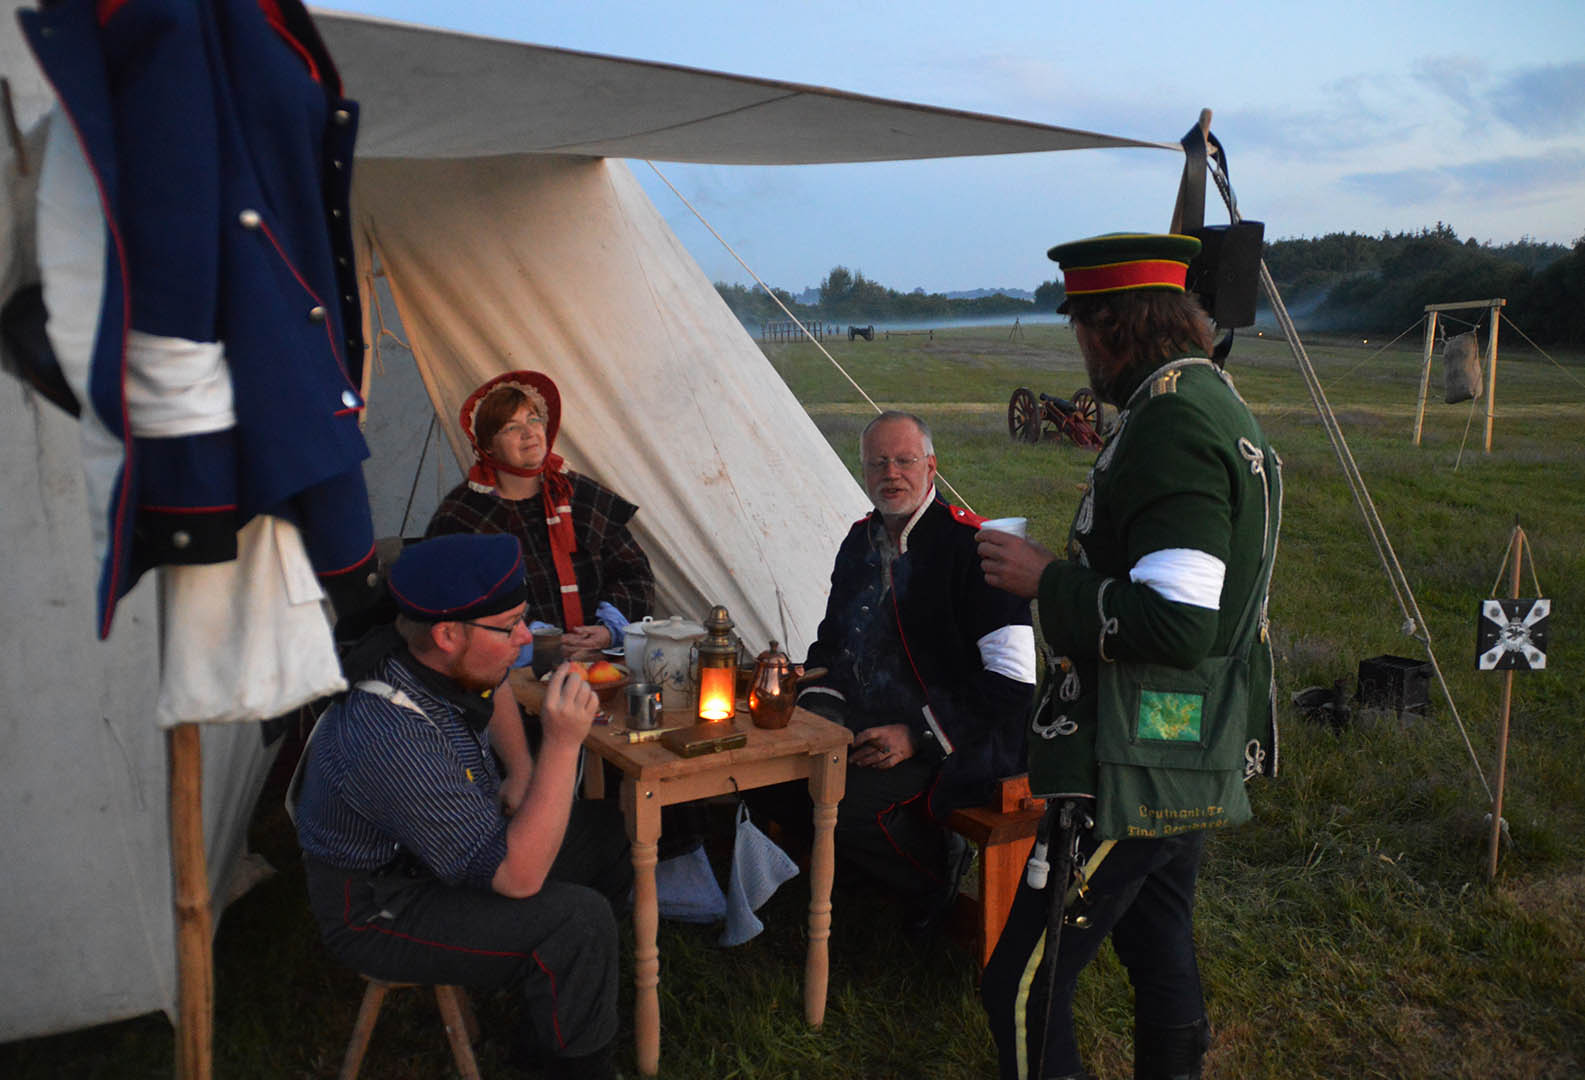 Meet Dybbøl Banke’s friendly foes, dressed up in historic Danish and German soldiers’ uniforms, historical re-enactors showcase their skills